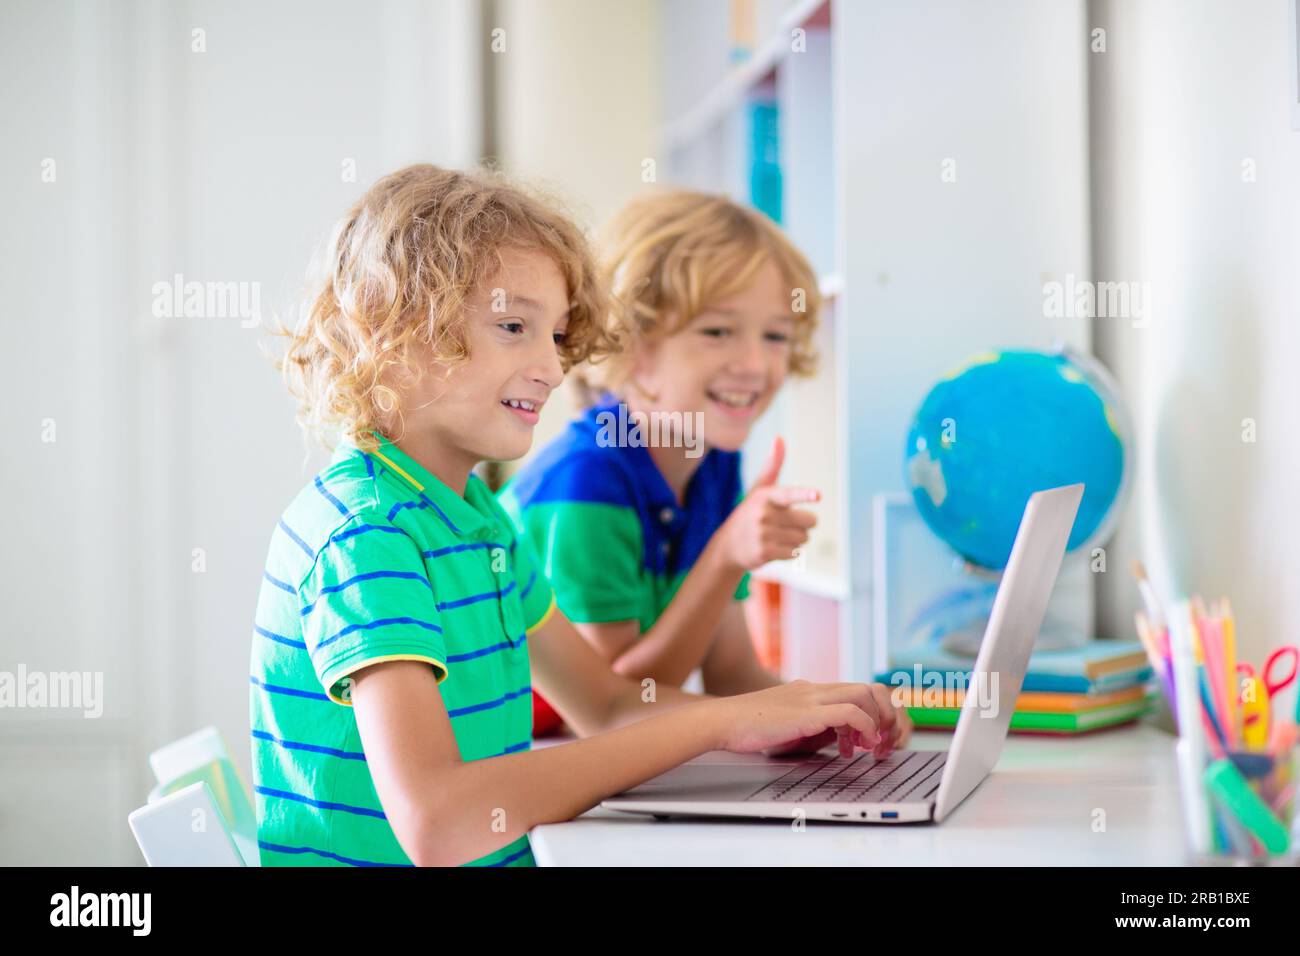 Enfant faisant ses devoirs sur ordinateur. Cours en ligne. Homeschooling et apprentissage à distance. Petit garçon d'école lisant sur l'écran de moniteur. Les enfants jouent à un jeu vidéo. Banque D'Images